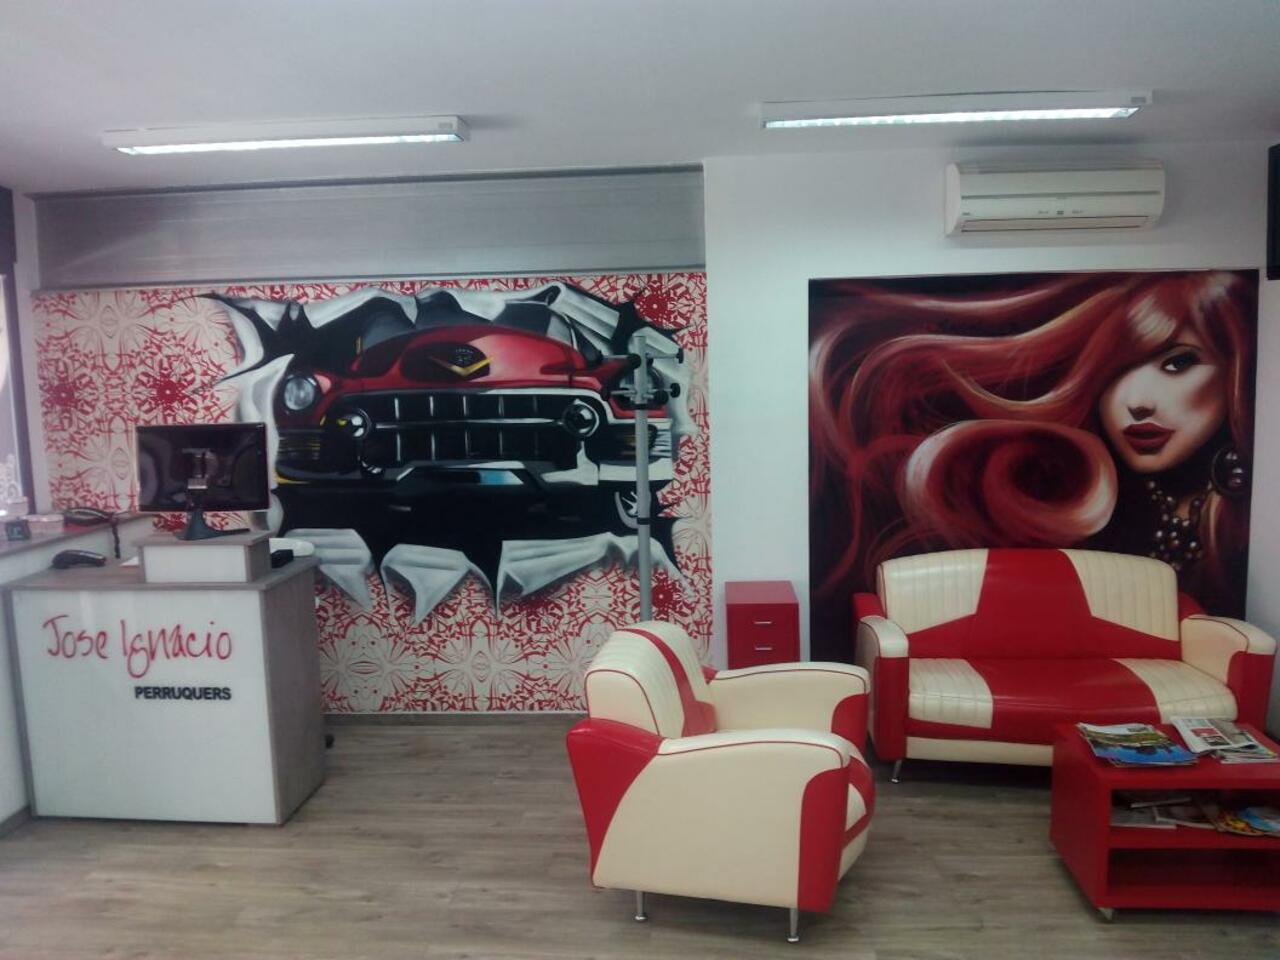 Decoración #graffiti mural interior en peluquería de coche y chica... #arteurbano http://t.co/XEyP50dYyD